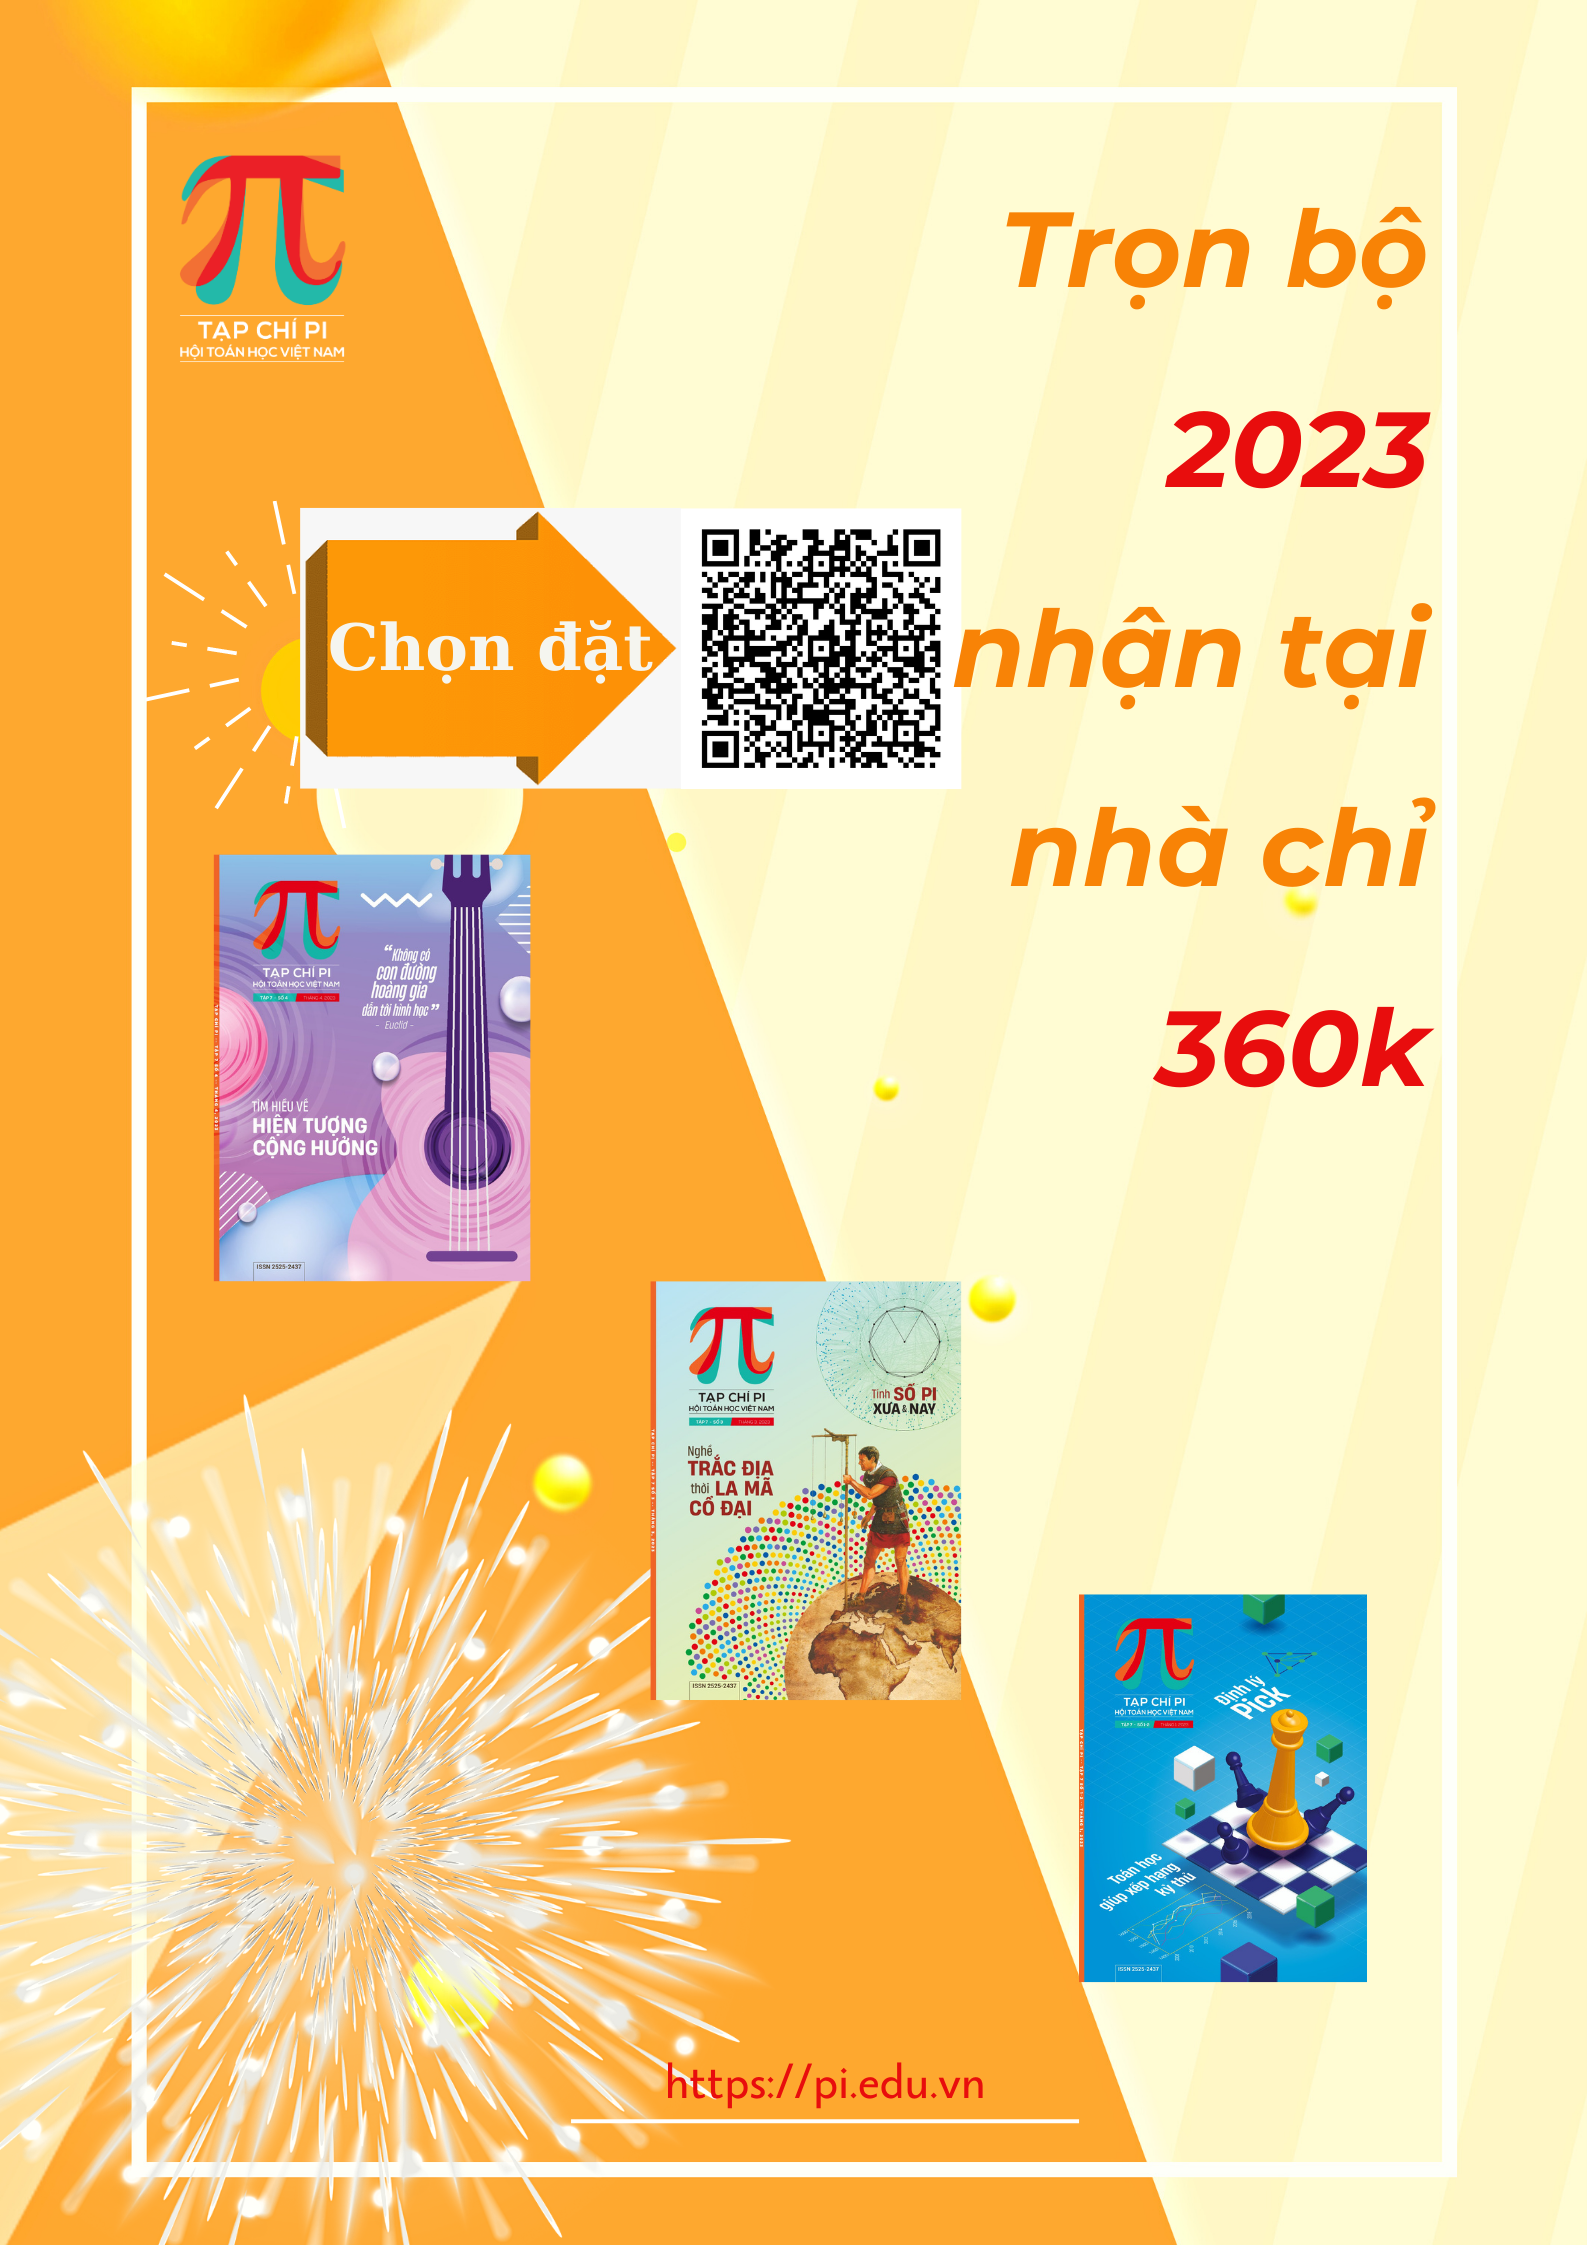 Tạp chí Pi- Hội Toán học Việt Nam số 4/ tháng 4 năm 2018